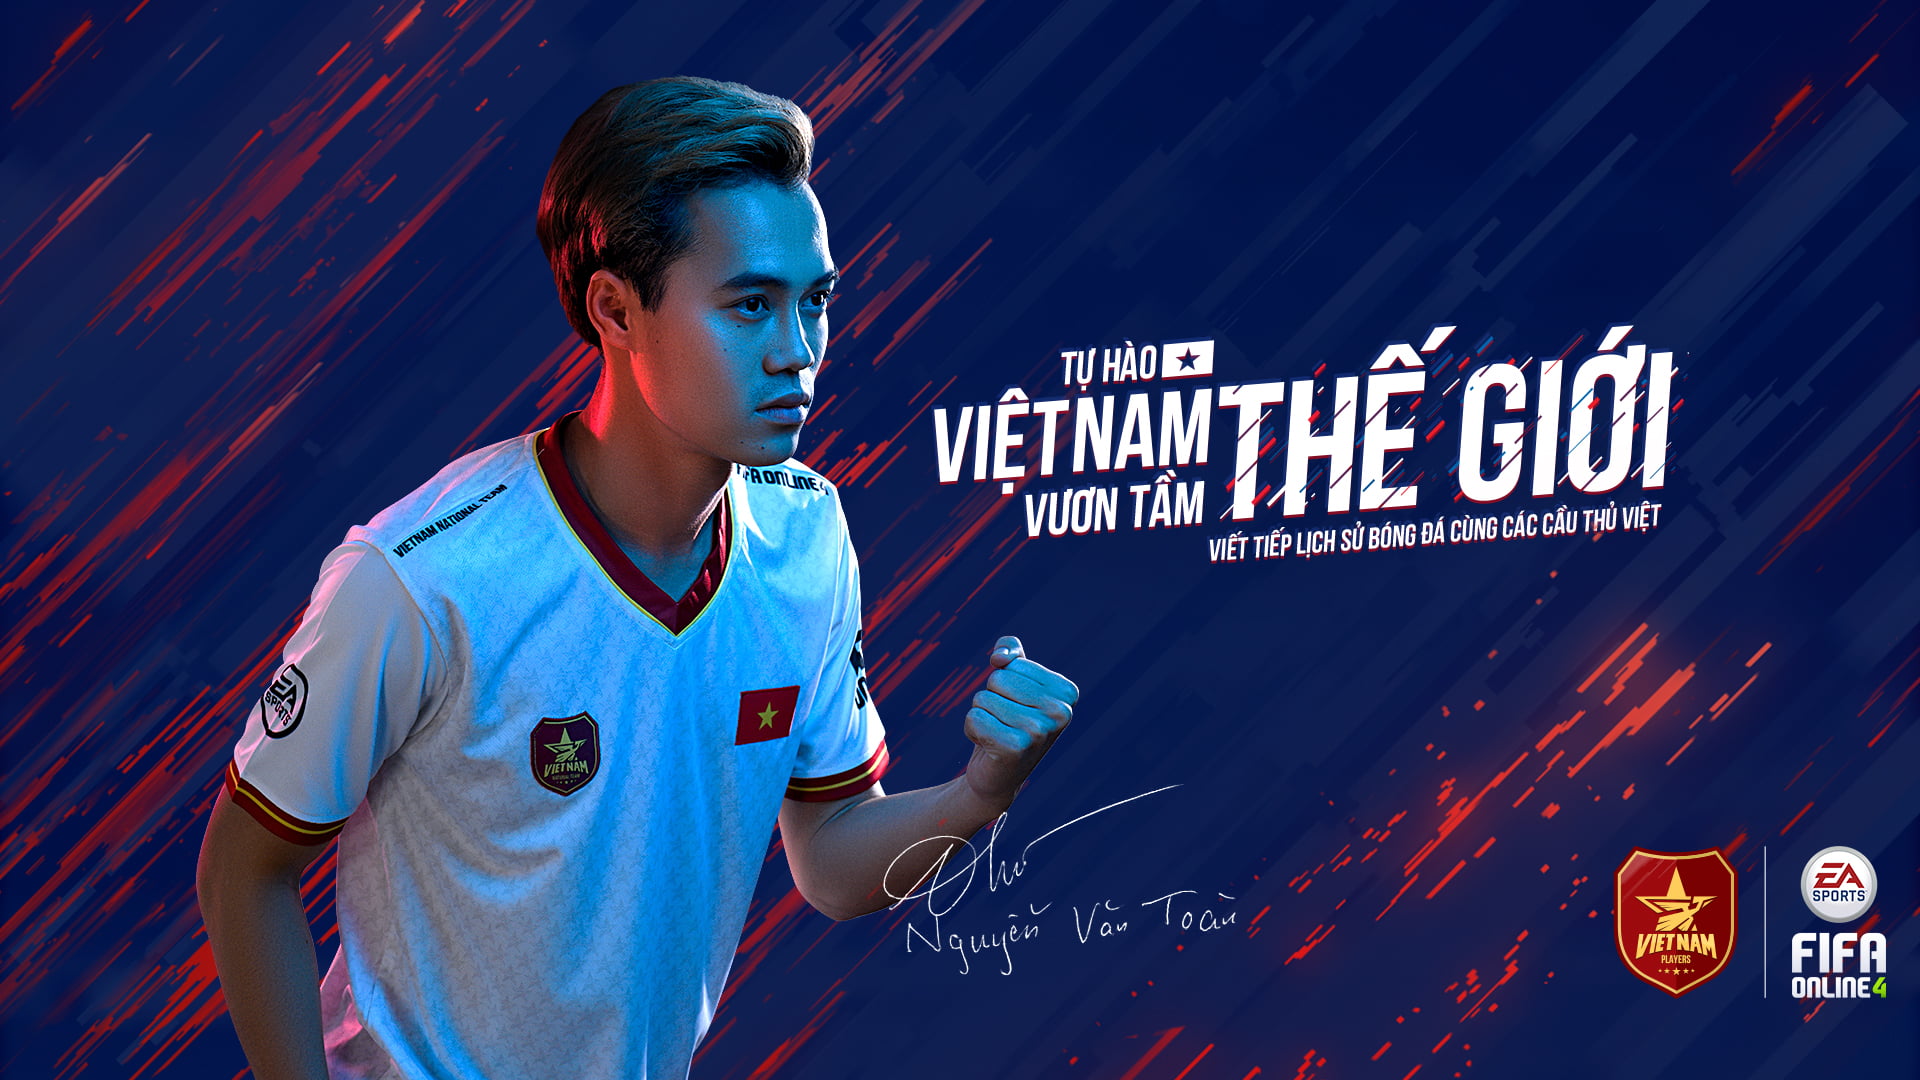 Vietnam, Vietnam Football, FIFA Online 4 Vietnam, Nguyen Van Toan